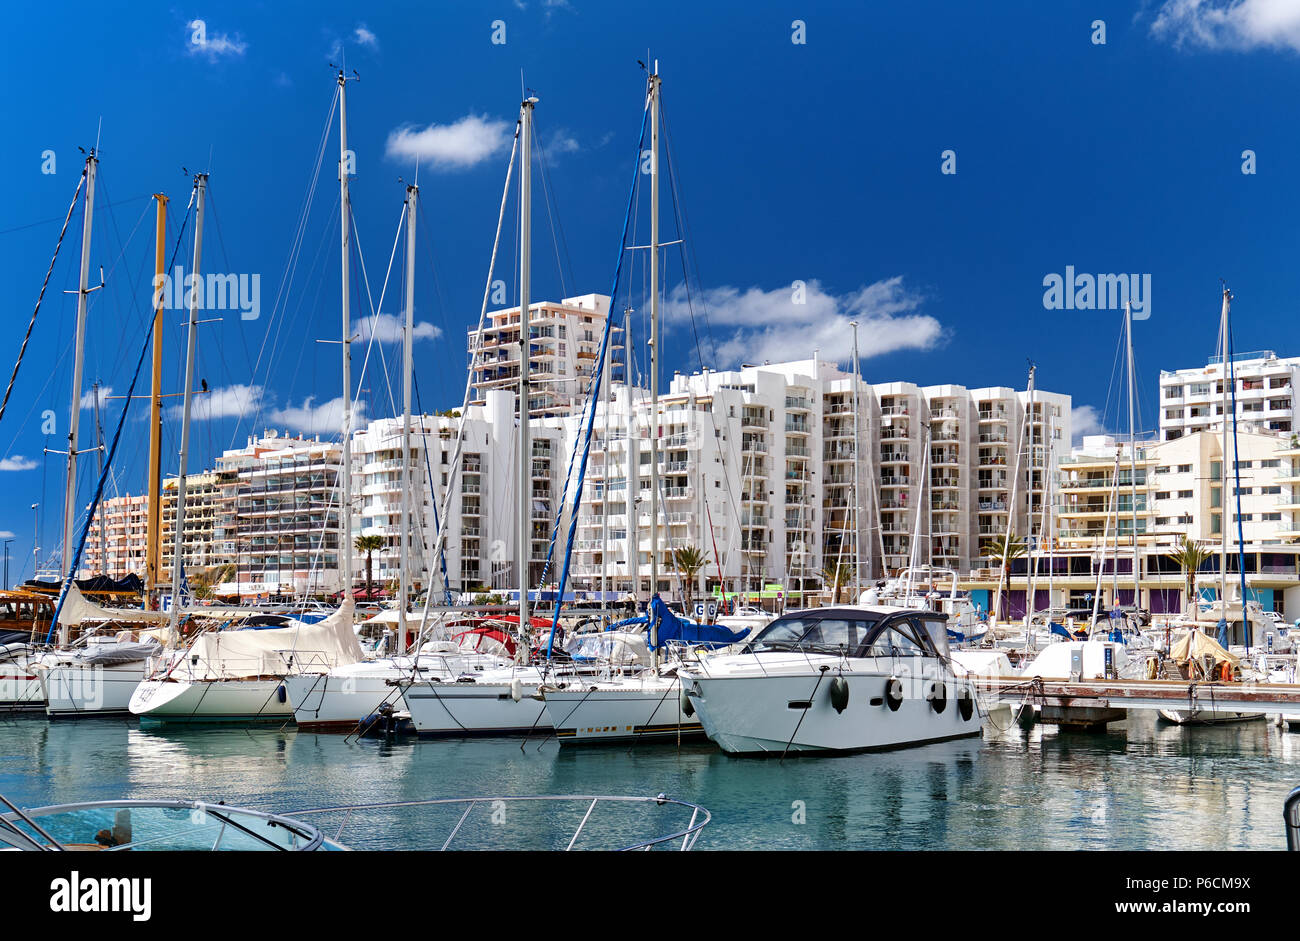 Hafen von Playa de Palma. San Antonio (Sant Antoni) ist die zweitgrößte Stadt auf Ibiza. Balearen. Spanien Stockfoto